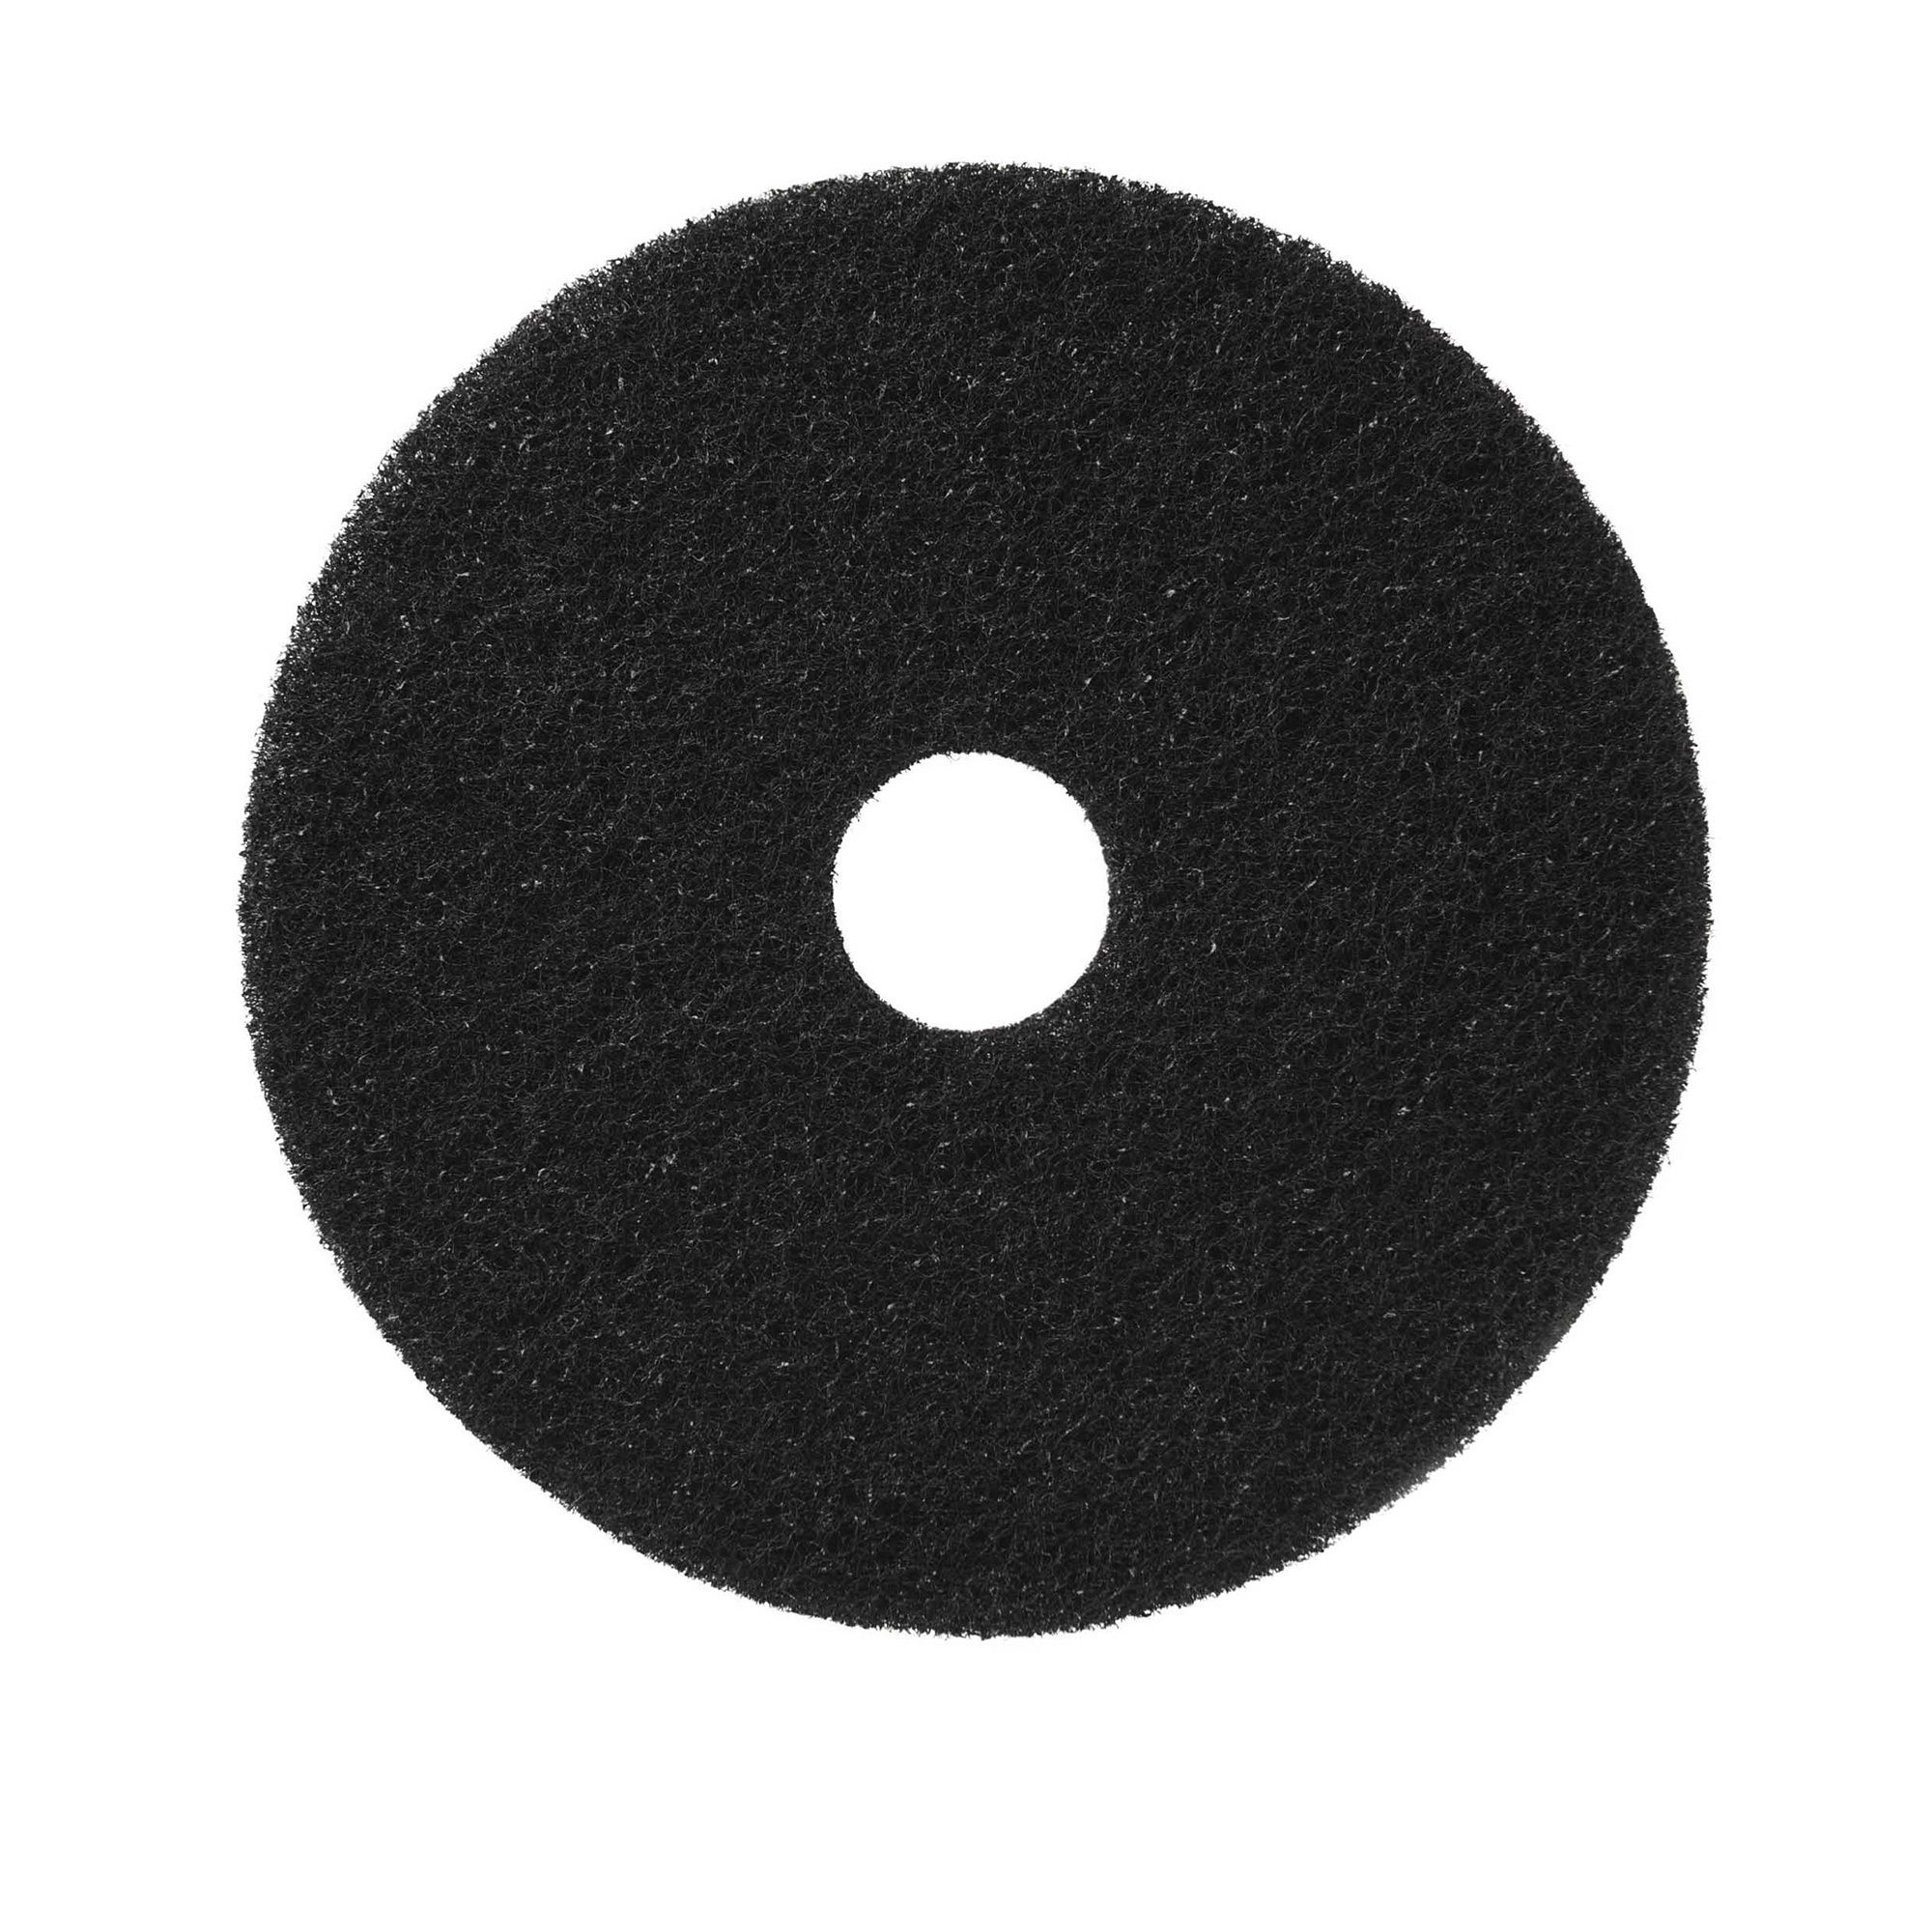 NuPad zwart (strippen met chemie), per 5 stuks, 16 inch / 406 mm